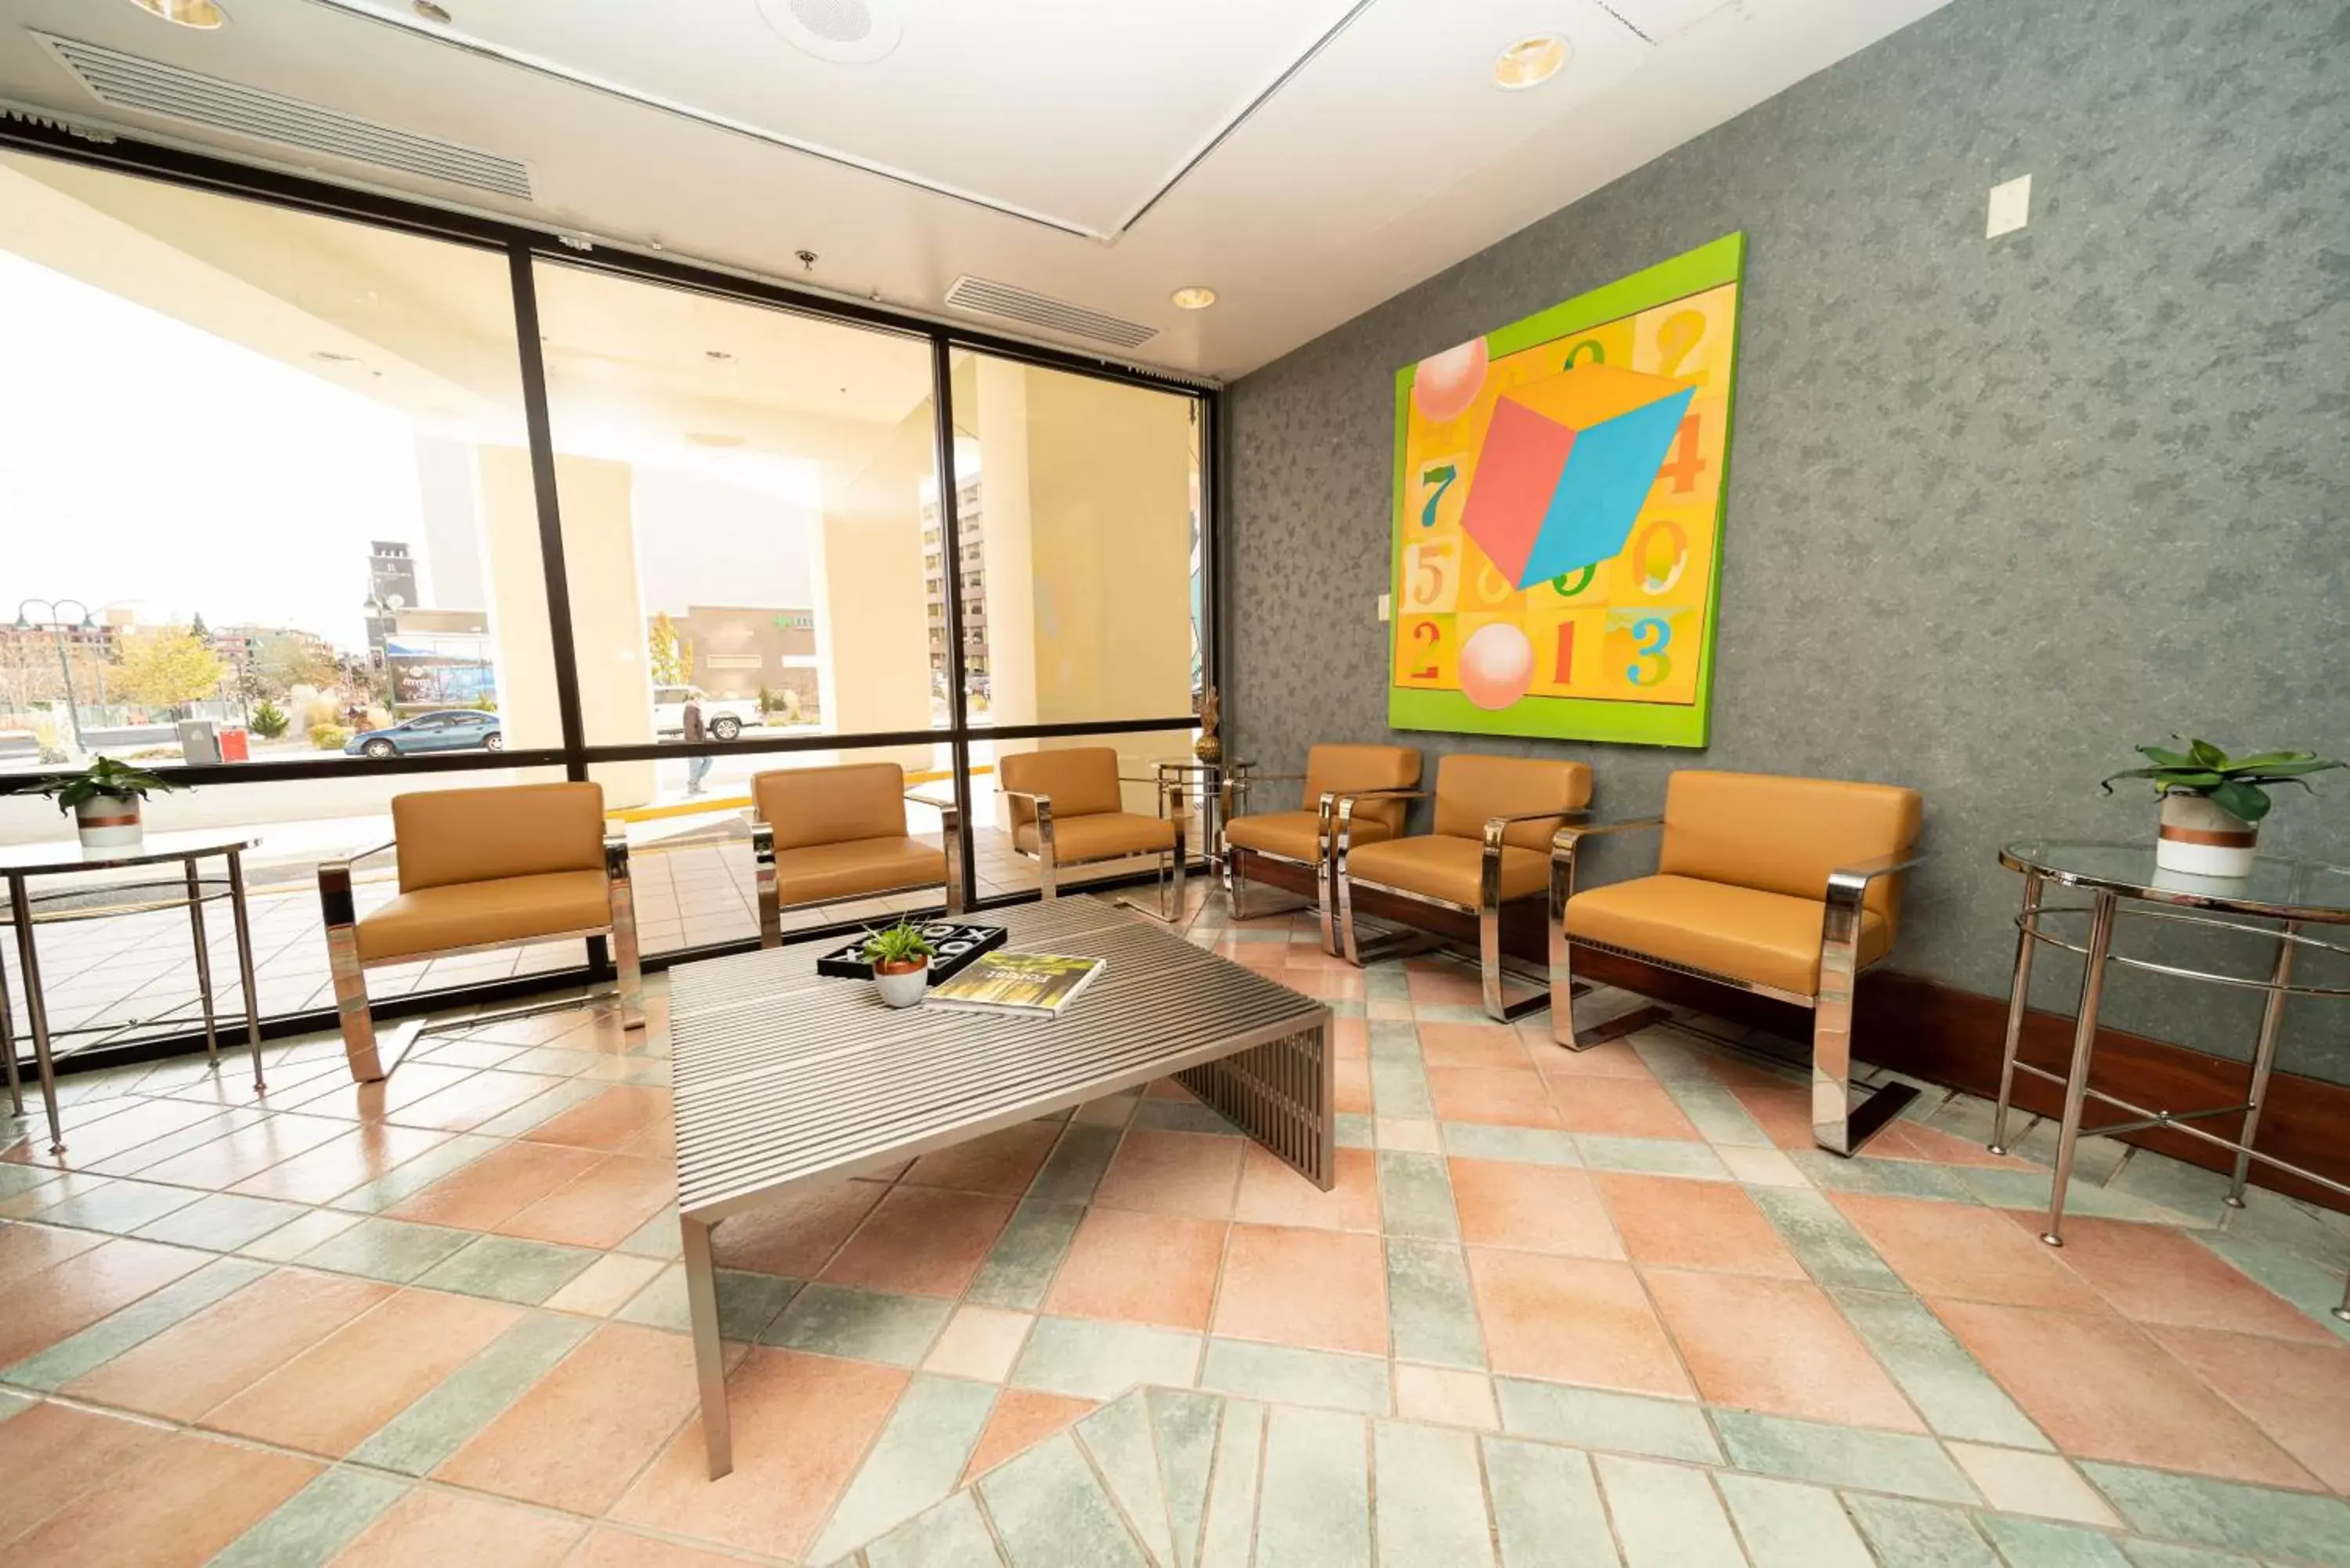 Lobby or reception in Reno Suites